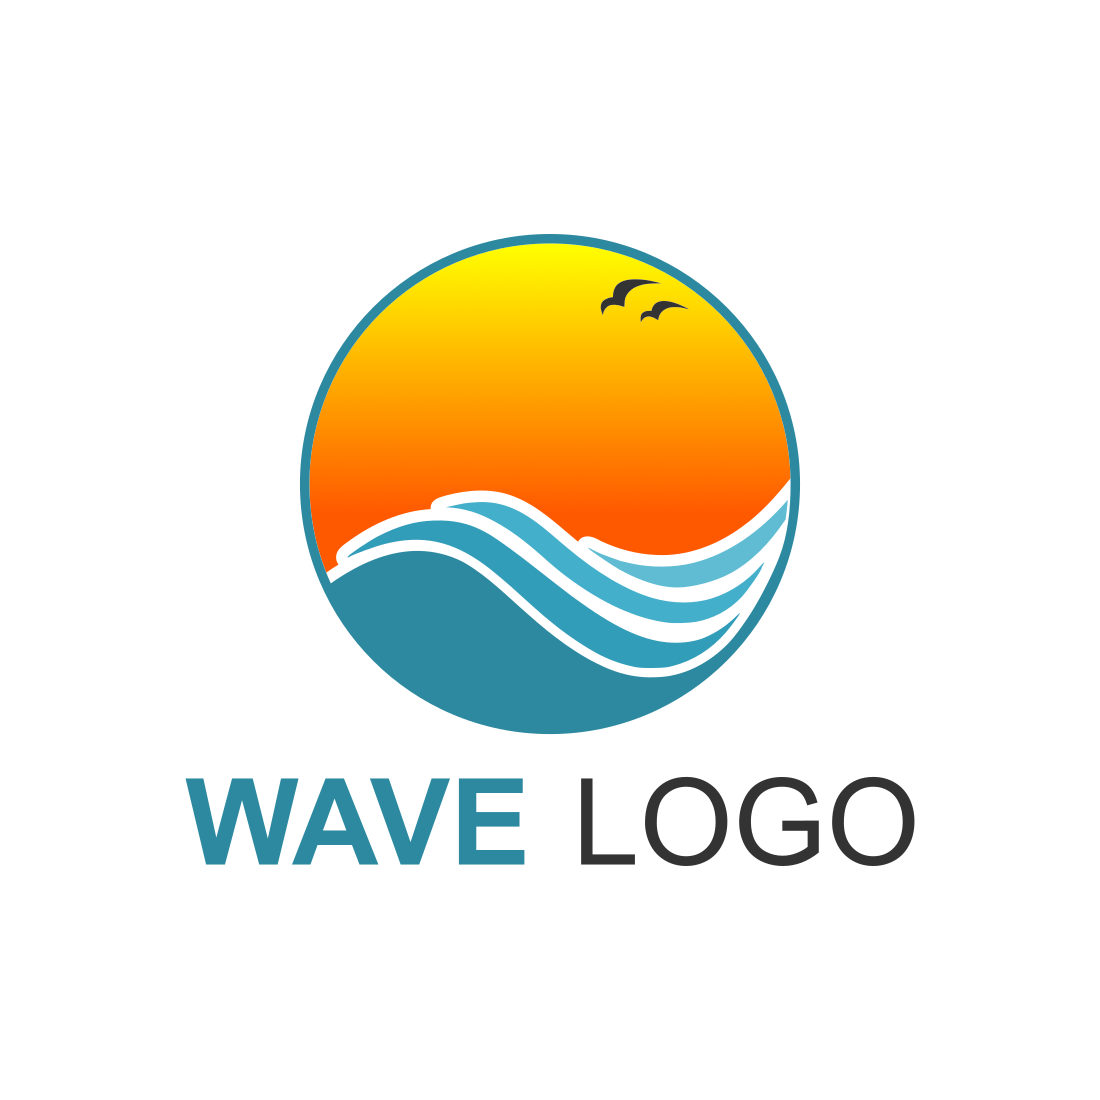 Waves Elegant Logo Design Template cover image.